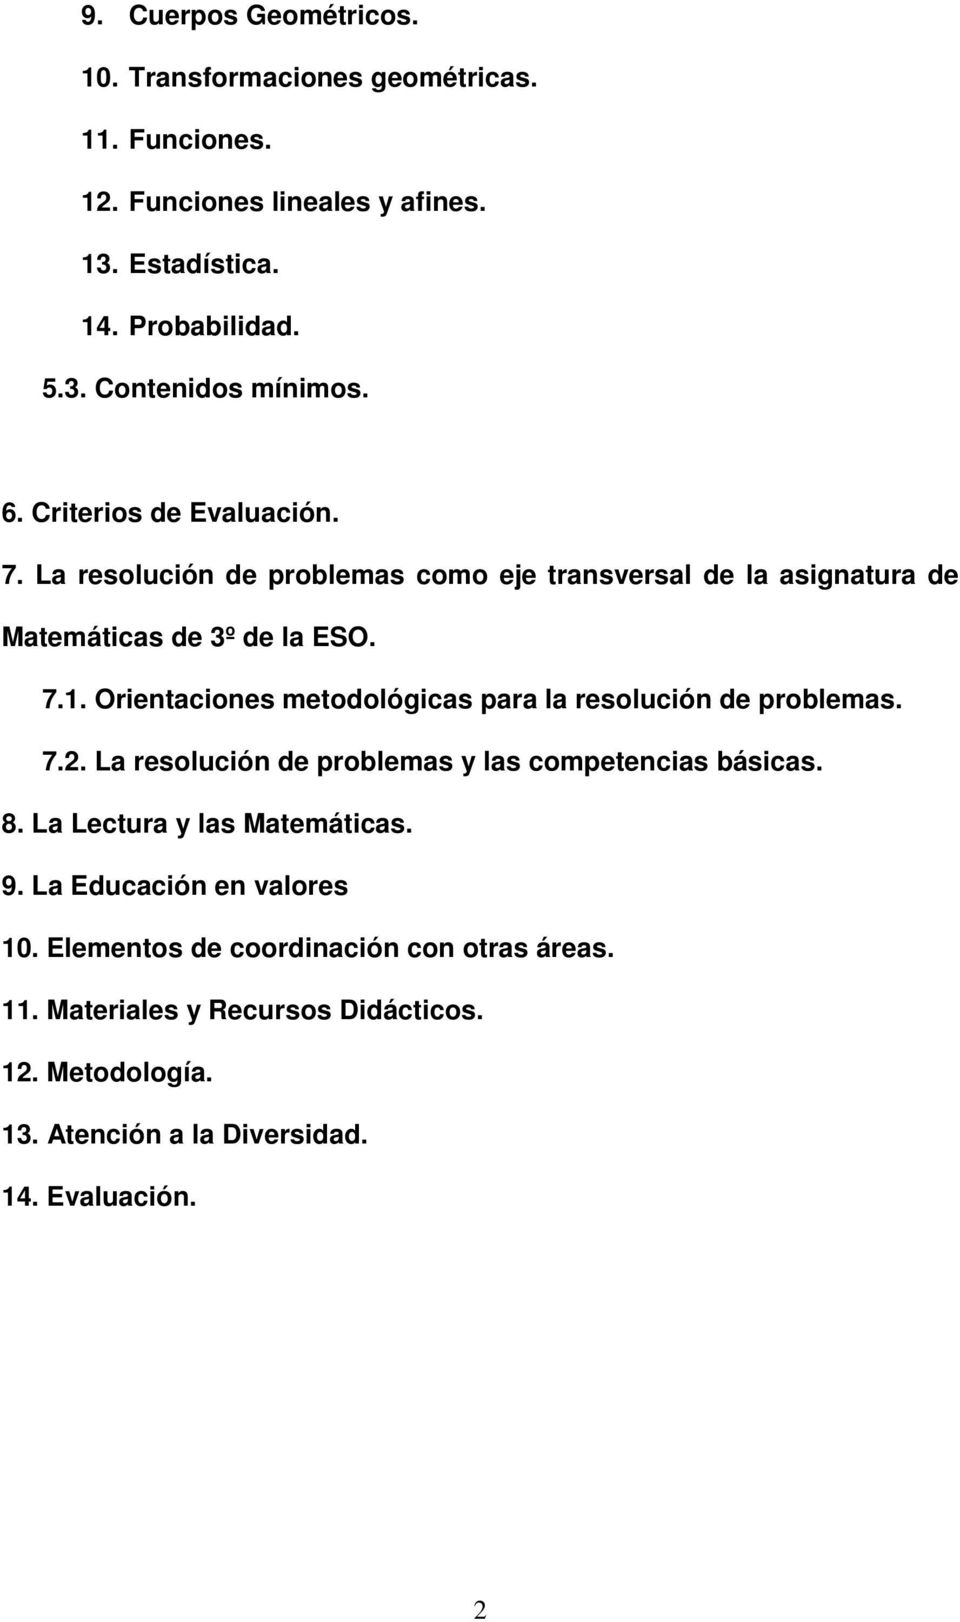 Orientaciones metodológicas para la resolución de problemas. 7.2. La resolución de problemas y las competencias básicas. 8. La Lectura y las Matemáticas. 9.